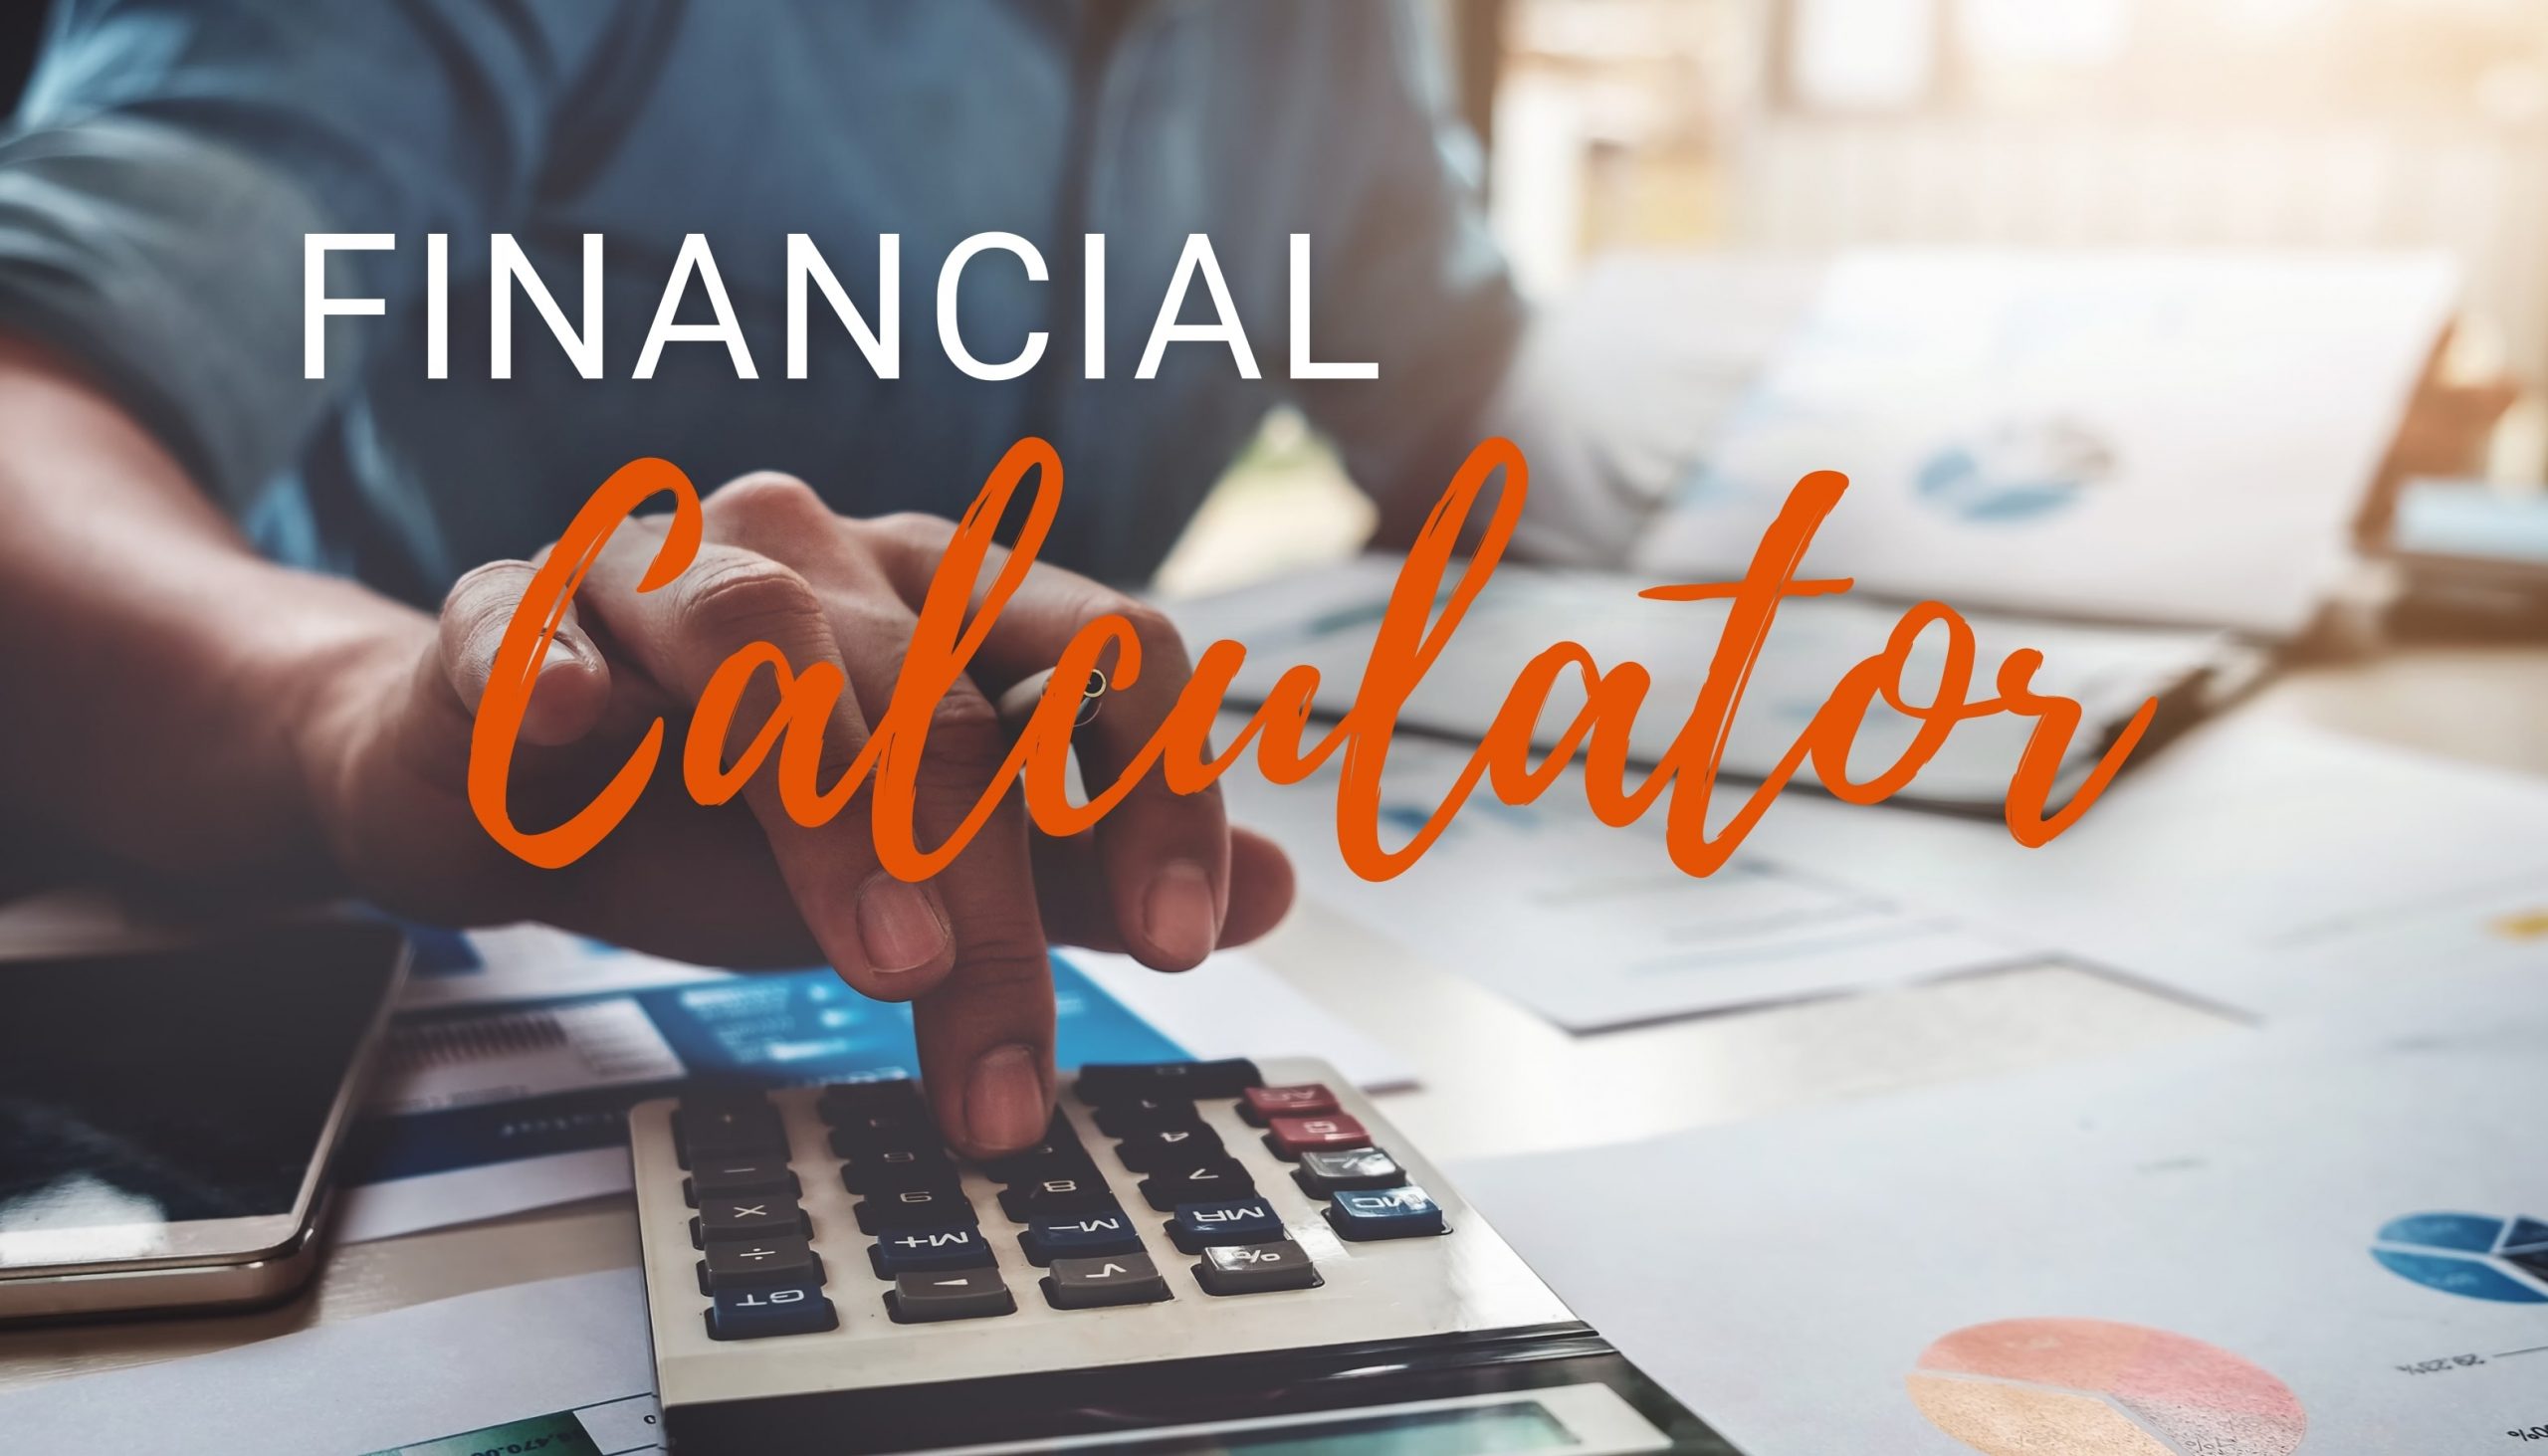 Financial Calculators, Buyers